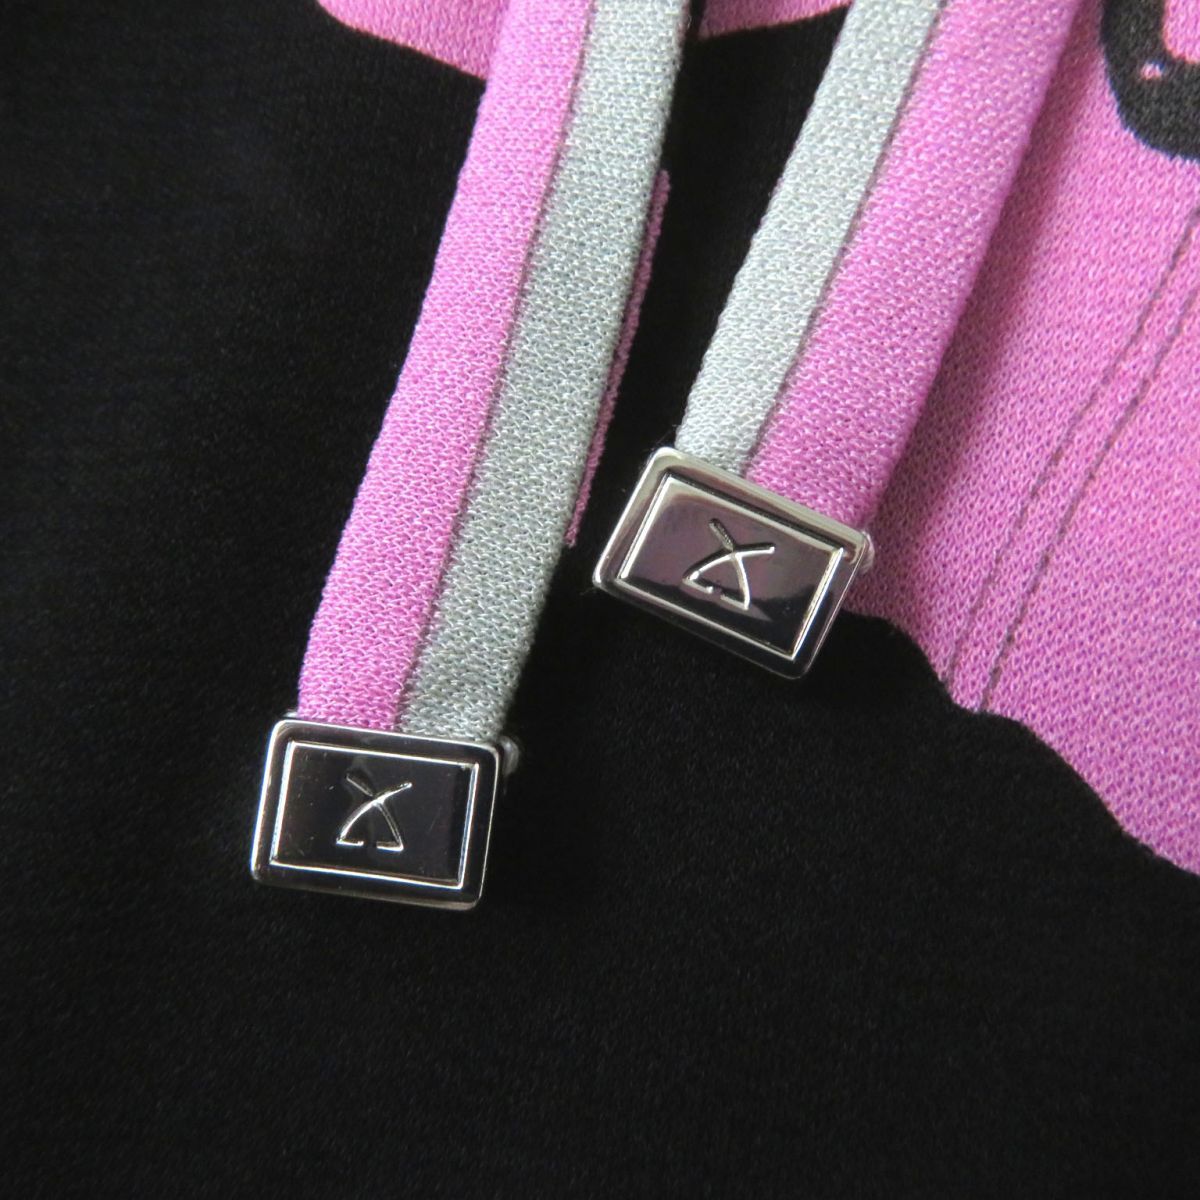 極美◎正規品 日本製 LEONARD FASHION レオナール ファッション 0160226 フロントリボン付 袖シースルー ワンピース 黒×ピンク 花柄 36